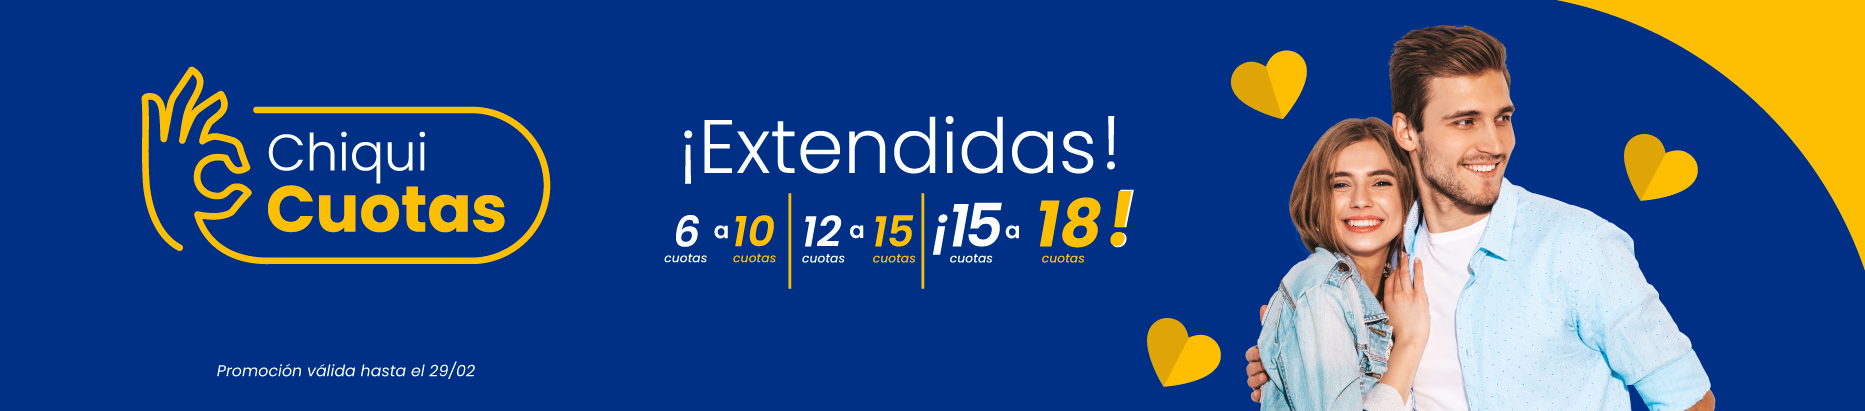 Banner web_Chiquicuotas Extendidas_FEBRERO